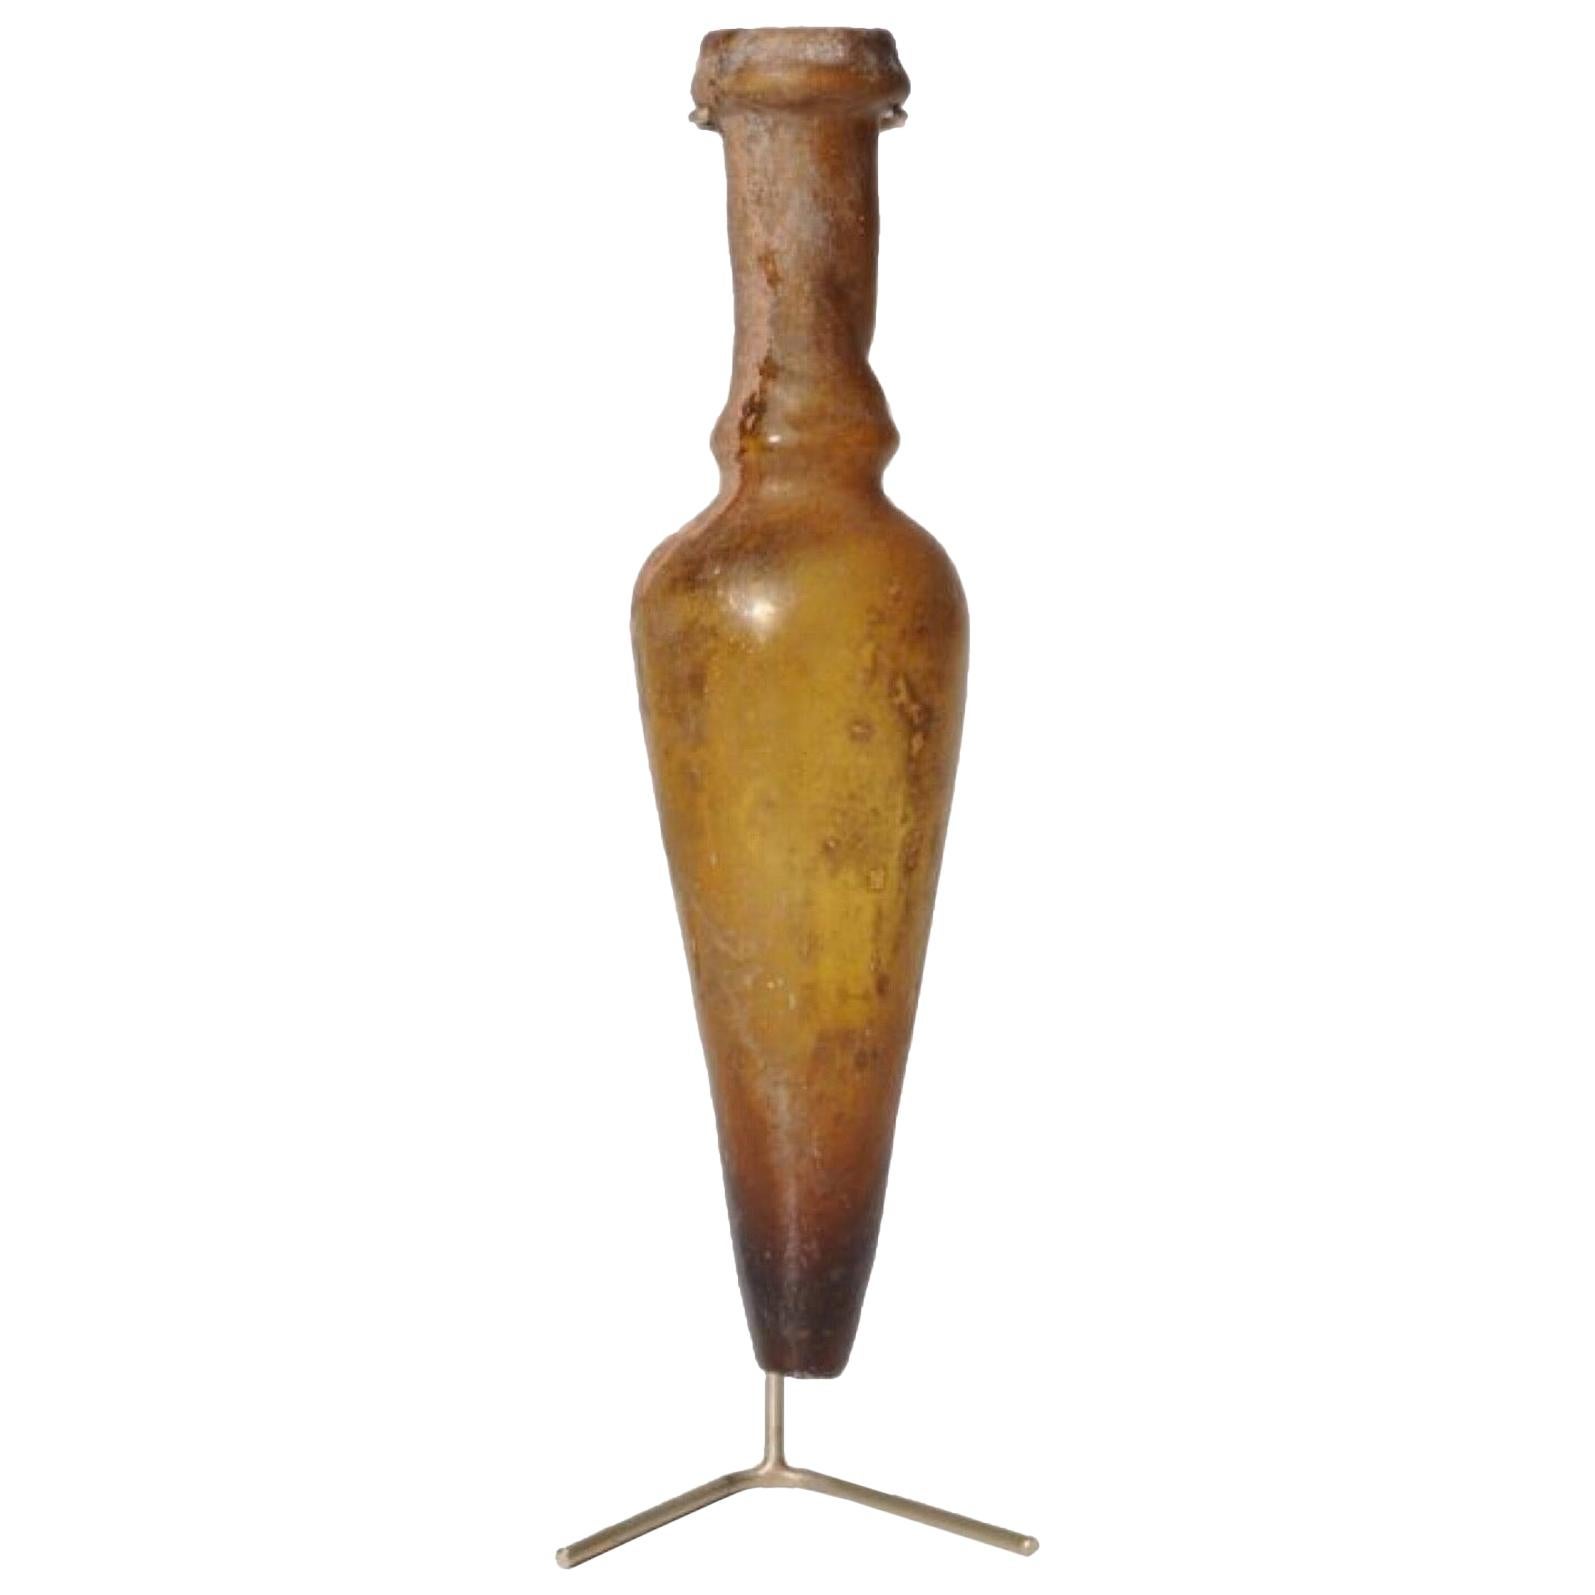 Amphora Amber-Colored Glass Bottle, Roman Period, circa 4th Century AD